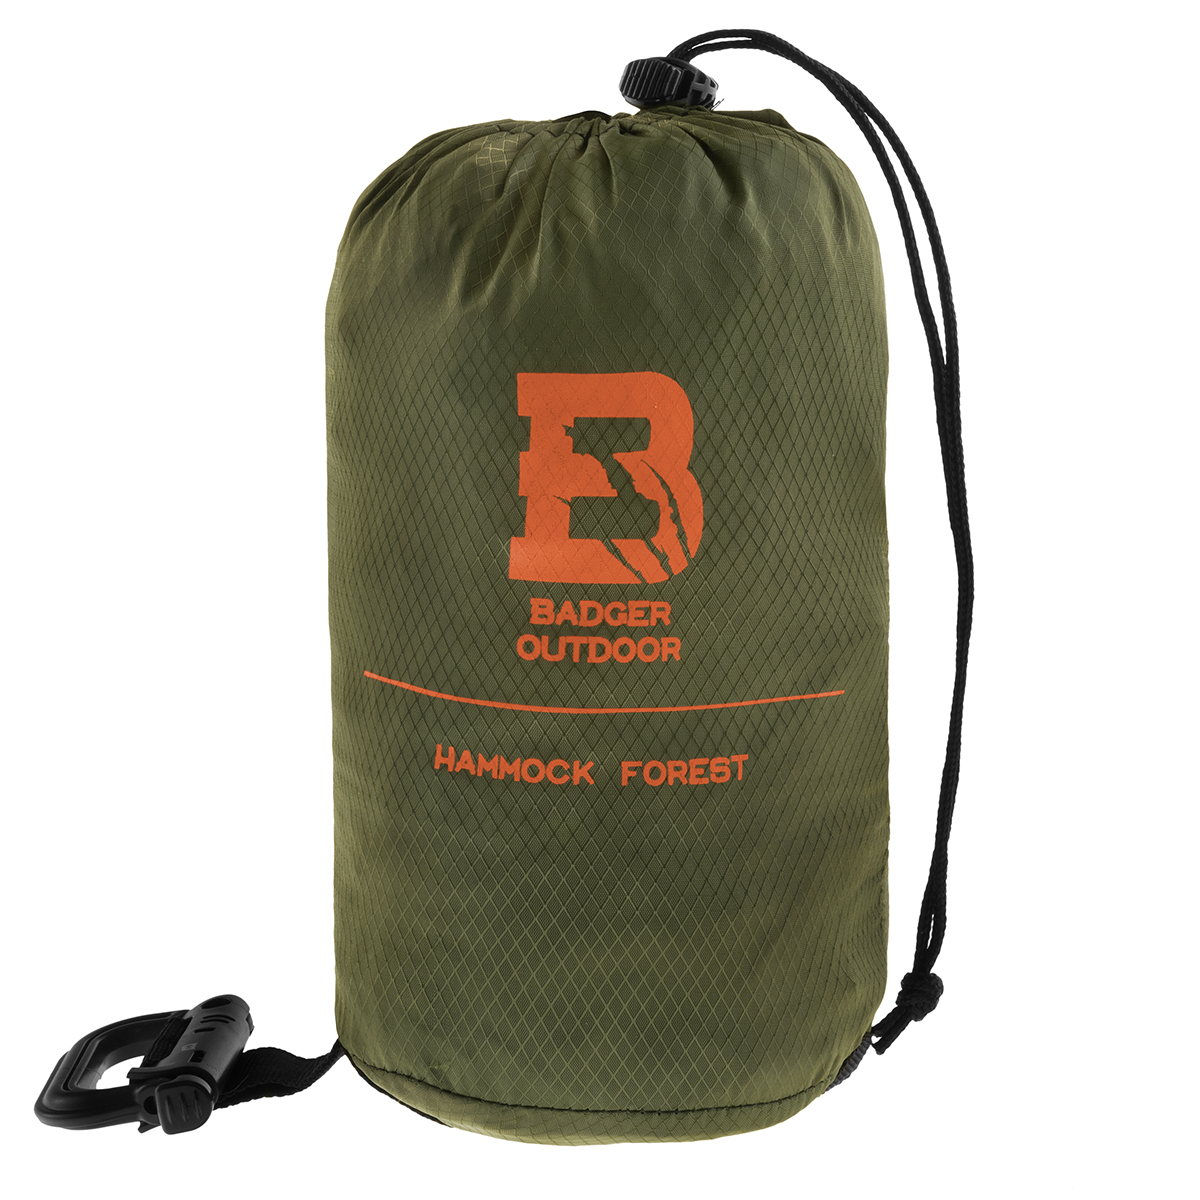 hamak-badger-outdoor-forest-300×140-ripstop-nylon-70d-olv-bo-hm-frt-olv-w-pokrowcu